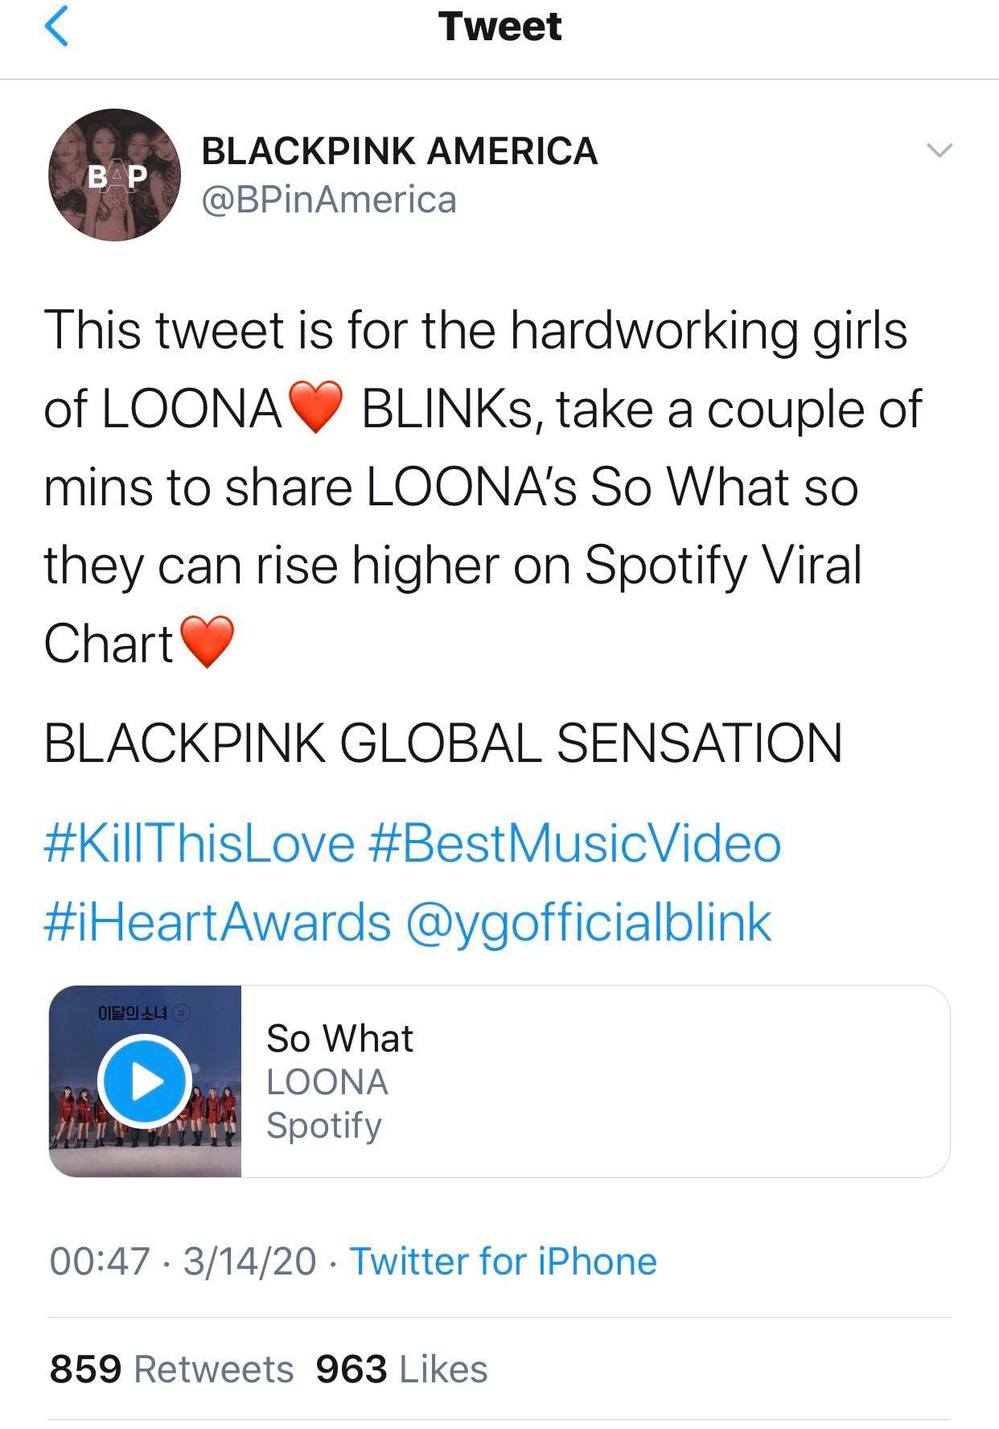  
Một fanpage lớn của BLACKPINK kêu gọi ủng hộ cho Loona (Ảnh: chụp màn hình).